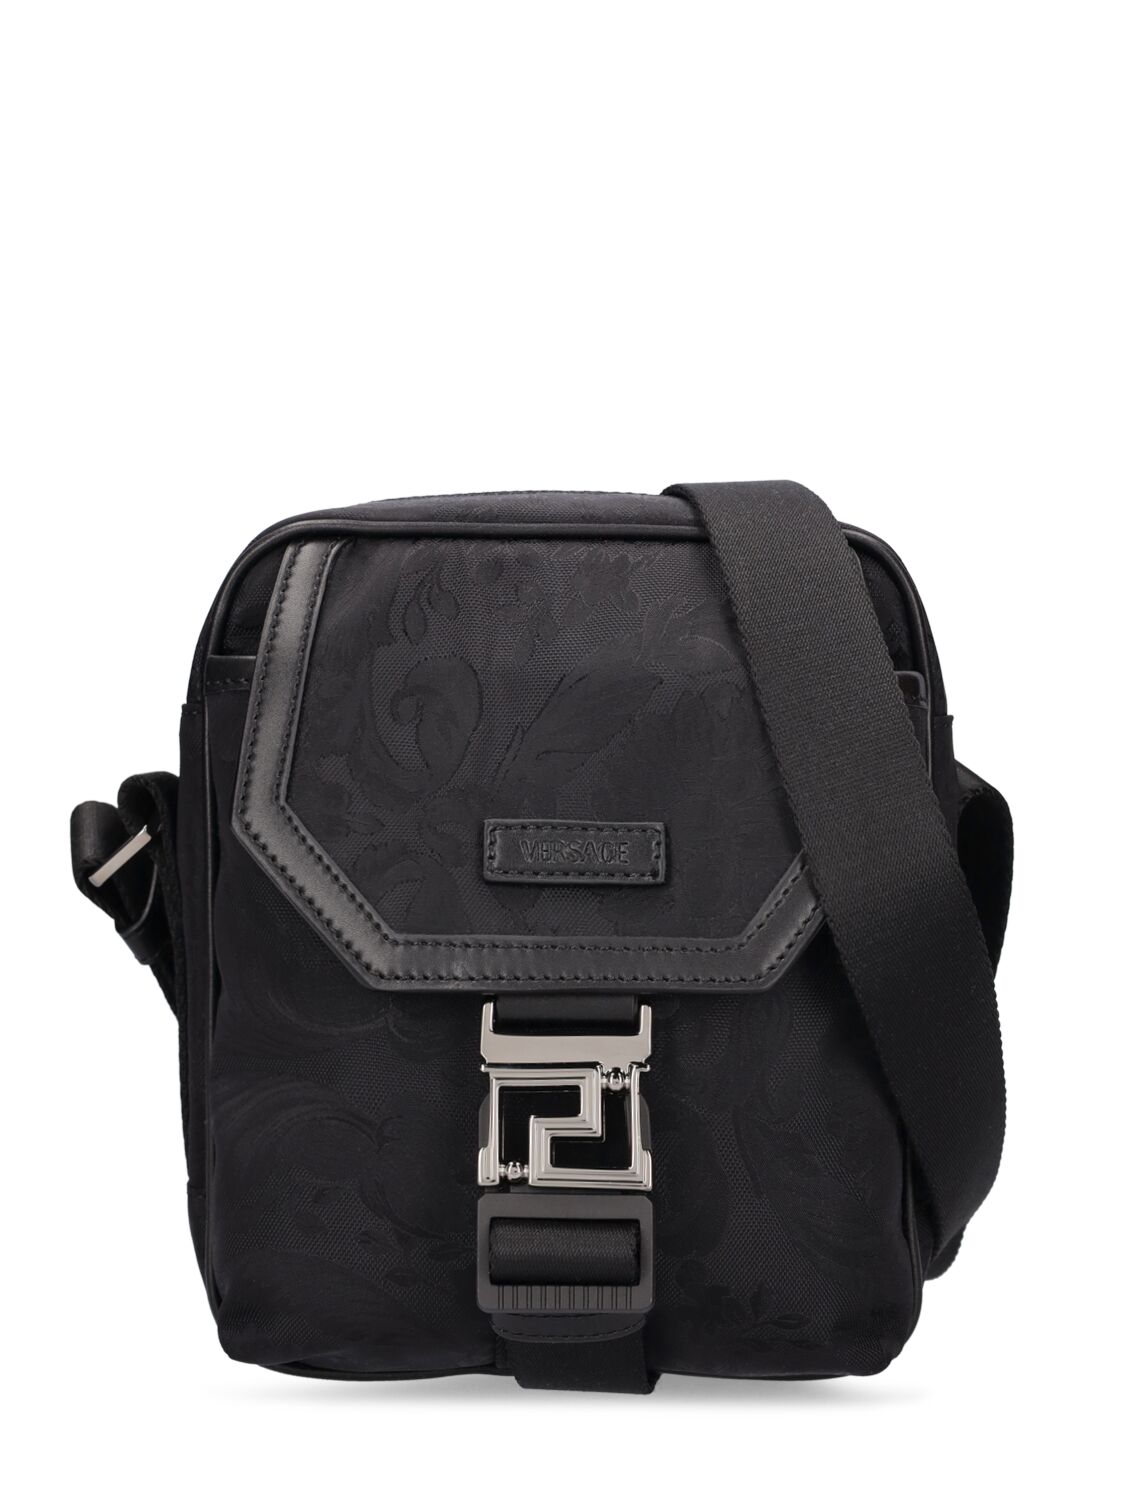 Image of Barocco Nylon Messenger Bag